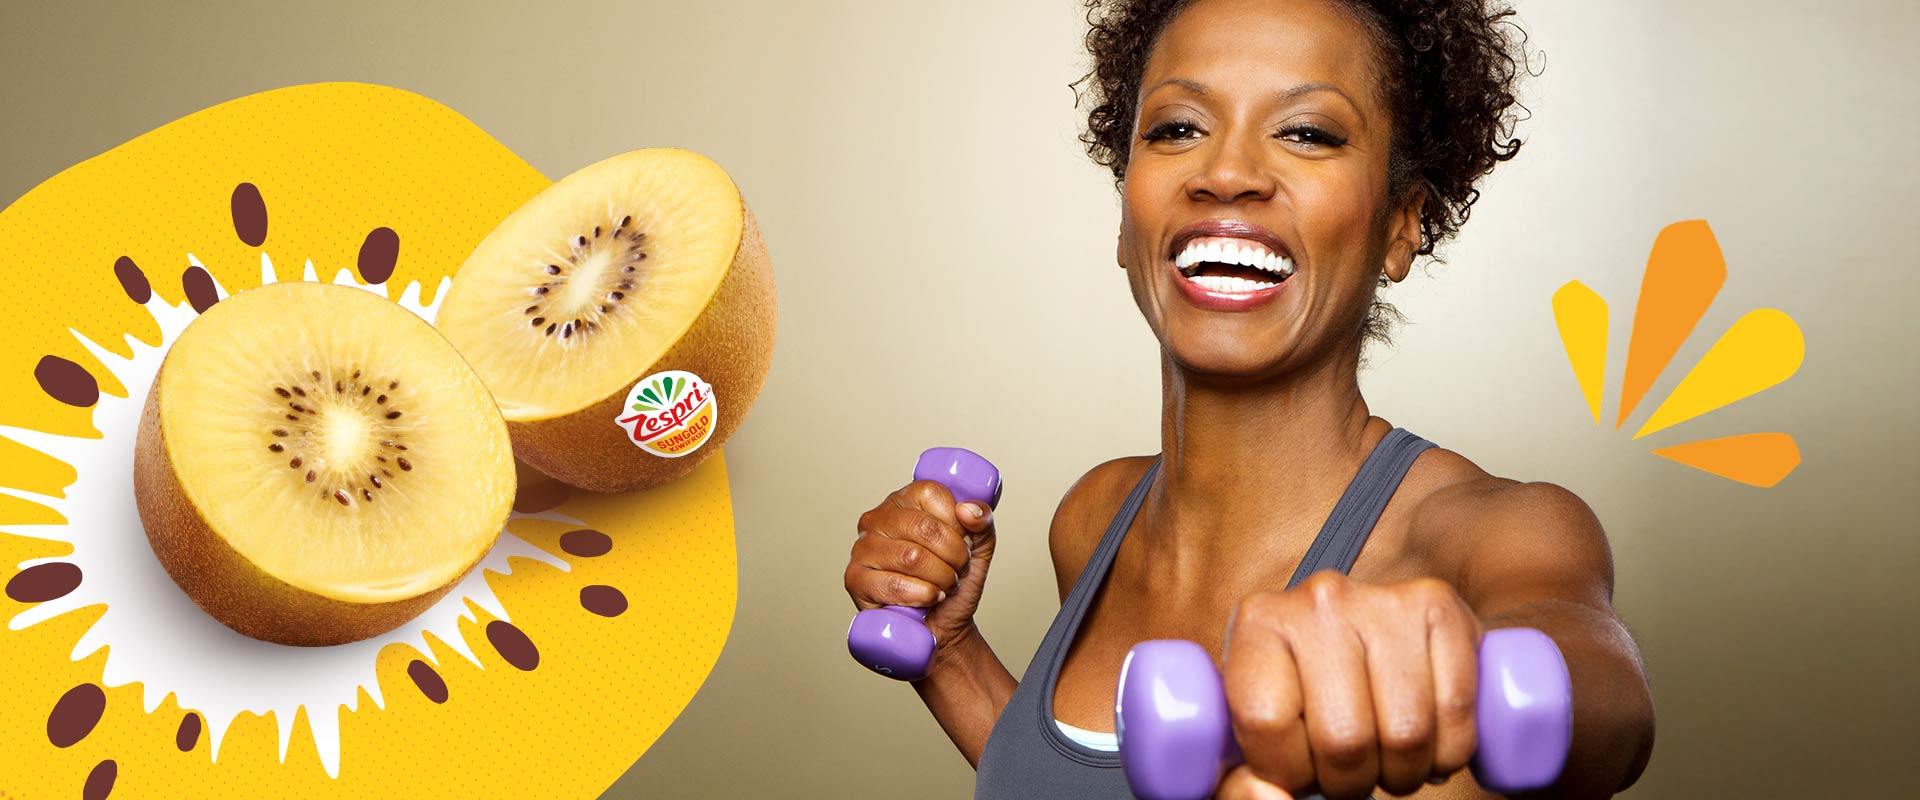 5 idee stimolanti per alimentare il tuo corpo dopo un allenamento